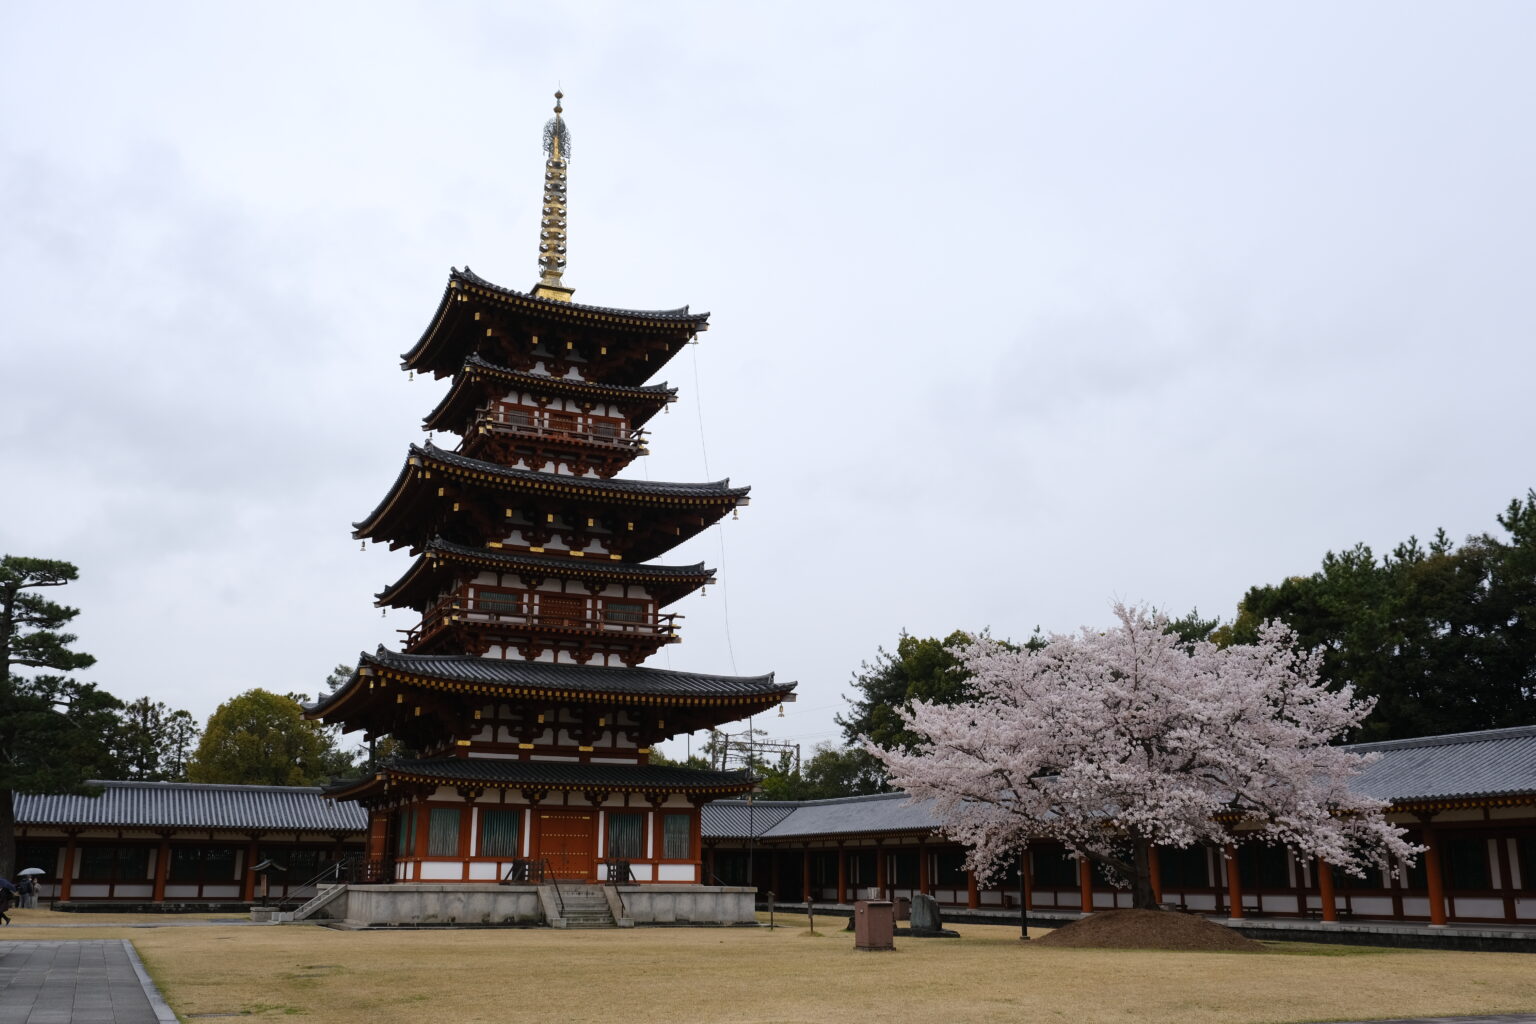 京都・吉野のあでやかな桜とモダンでフレッシュな奈良酒を楽しんだ酒旅1日目